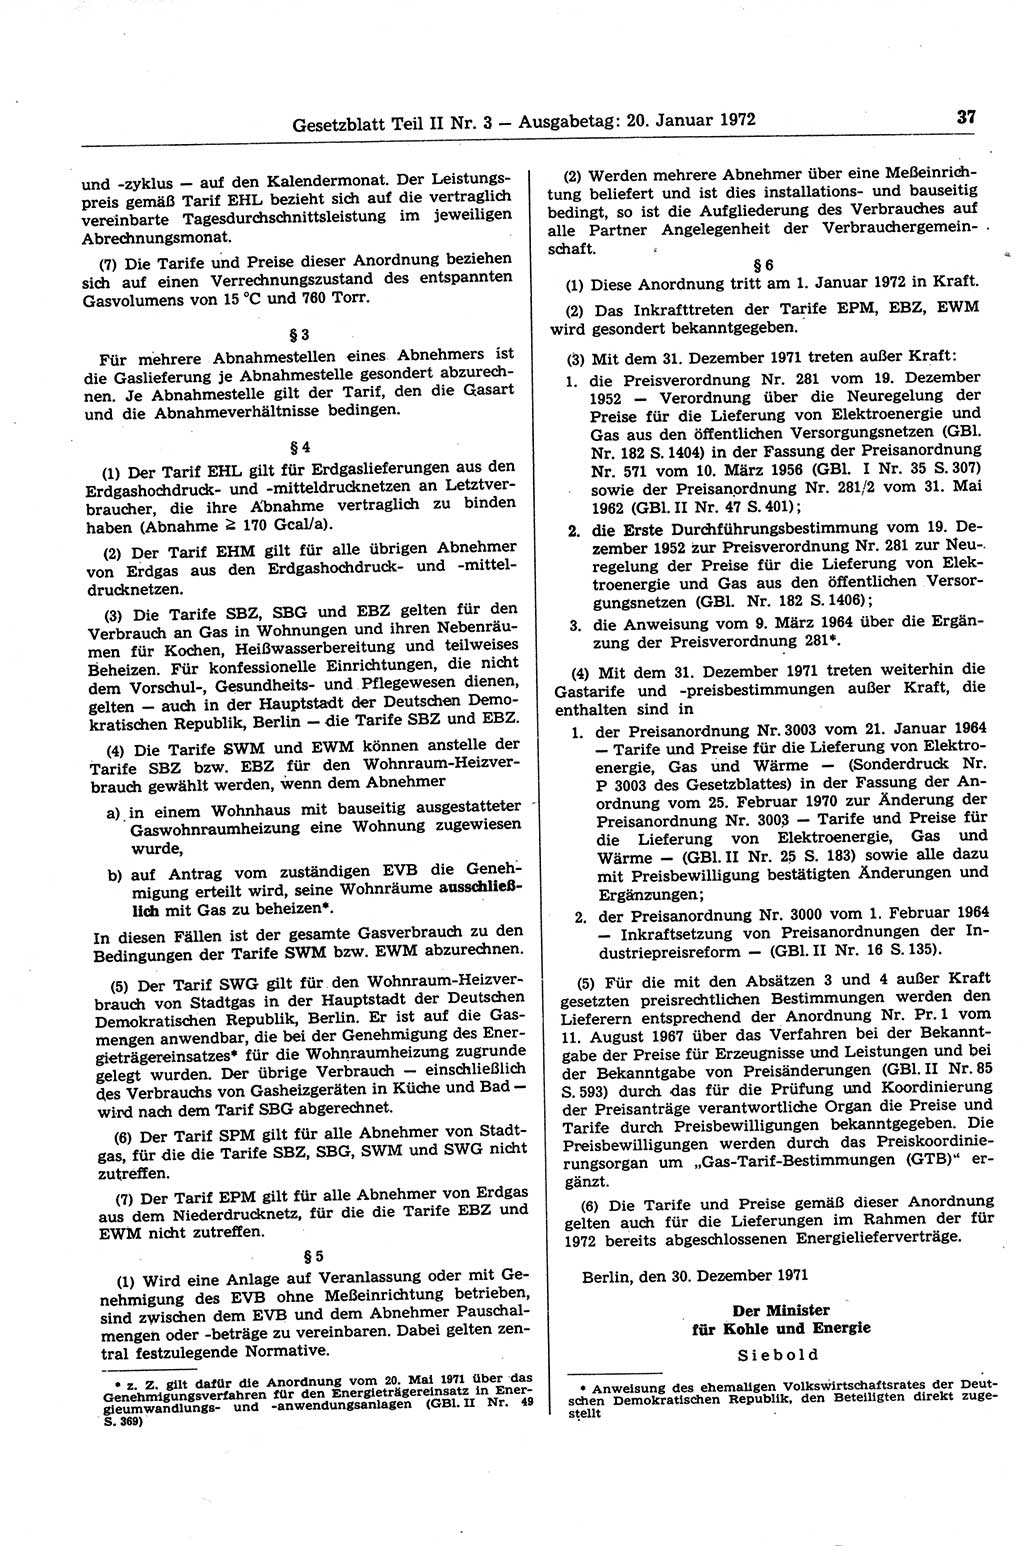 Gesetzblatt (GBl.) der Deutschen Demokratischen Republik (DDR) Teil ⅠⅠ 1972, Seite 37 (GBl. DDR ⅠⅠ 1972, S. 37)